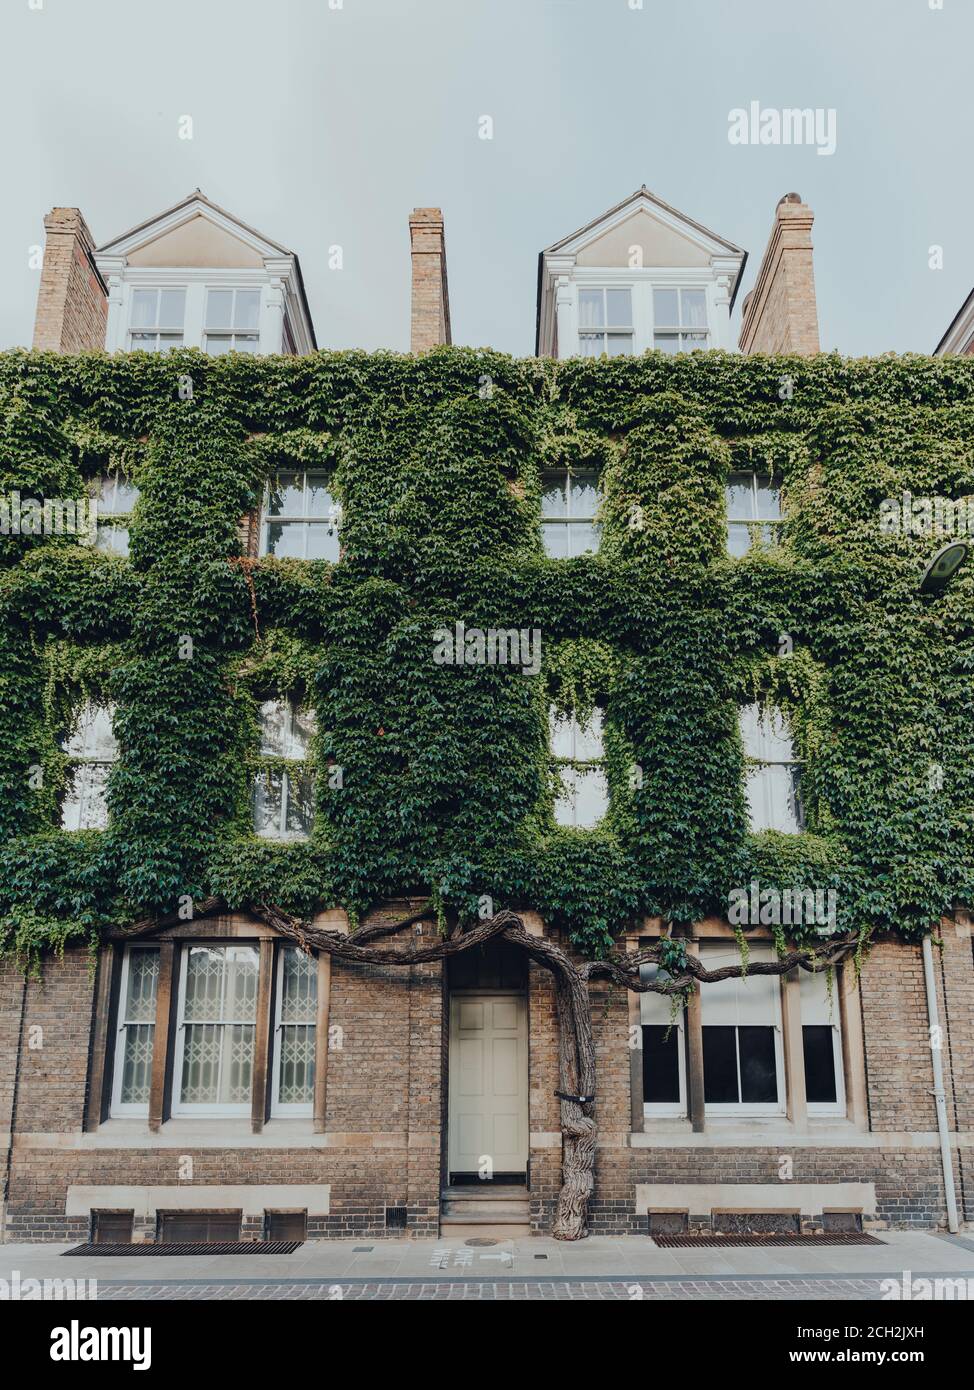 Oxford, Großbritannien - 04. August 2020: Fassade eines Gebäudes an der New Inn Hall Street in Oxford, einer Stadt in England berühmt für seine prestigeträchtige Universität, bedeckt Stockfoto